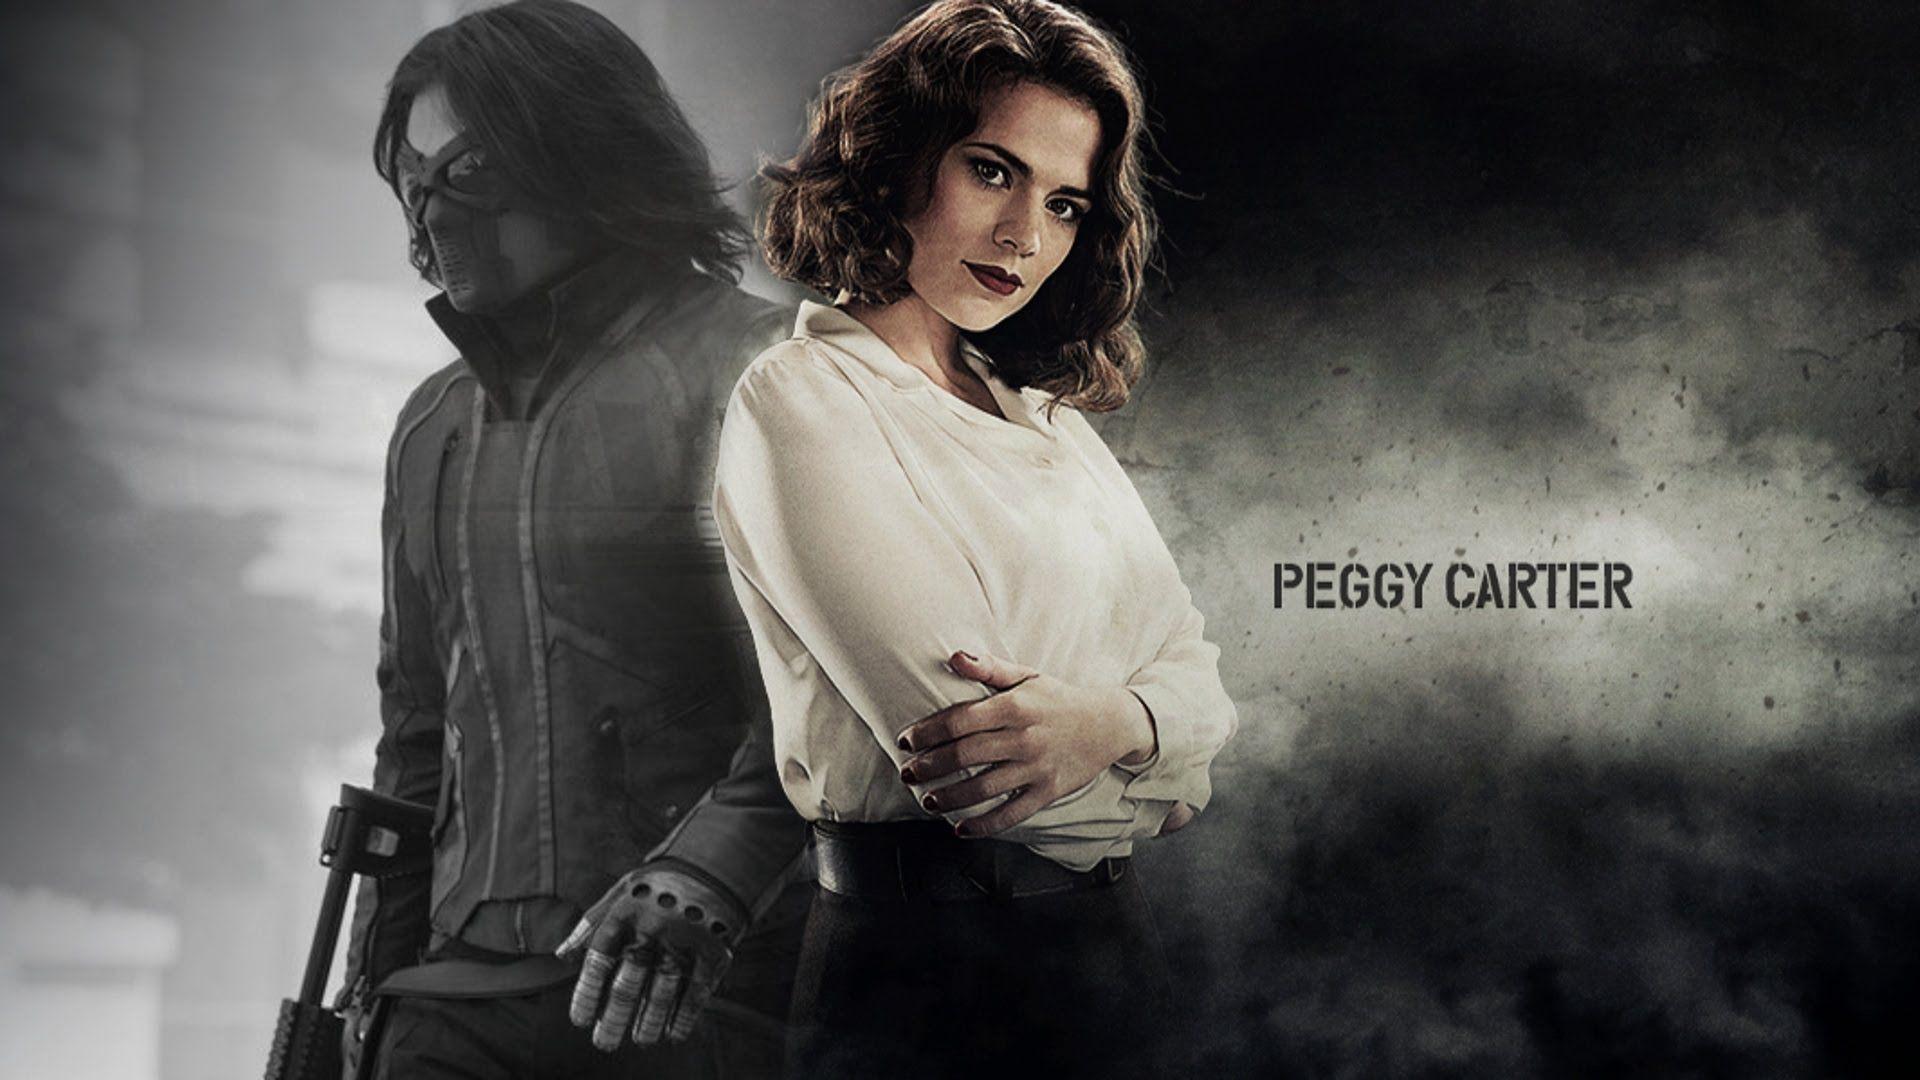 Agent Carter Art Poster wallpaper 2018 in Agent Carter